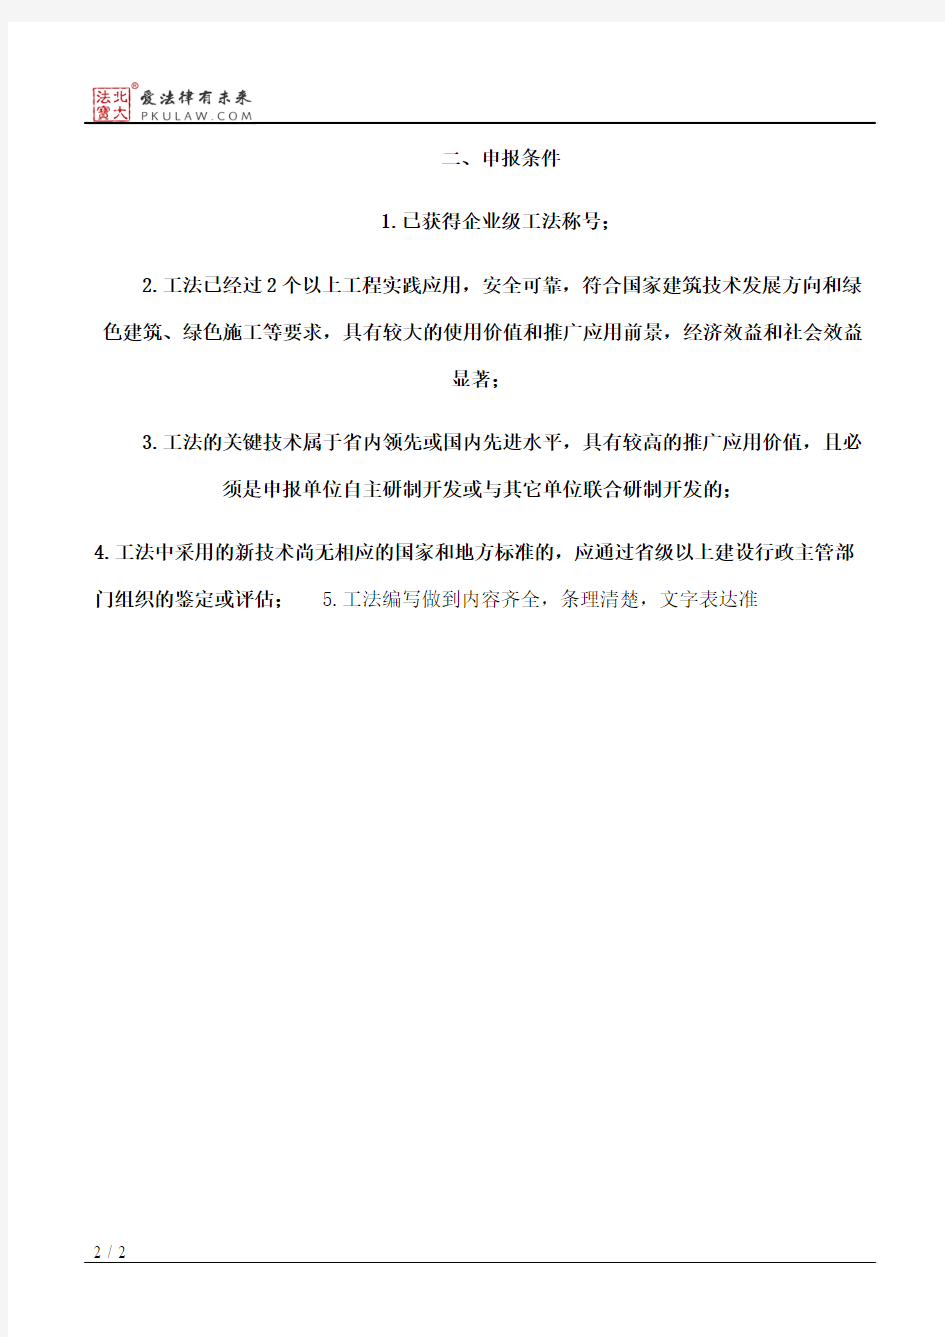 浙江省建筑业管理局关于组织开展2017年度省级工法申报工作的通知